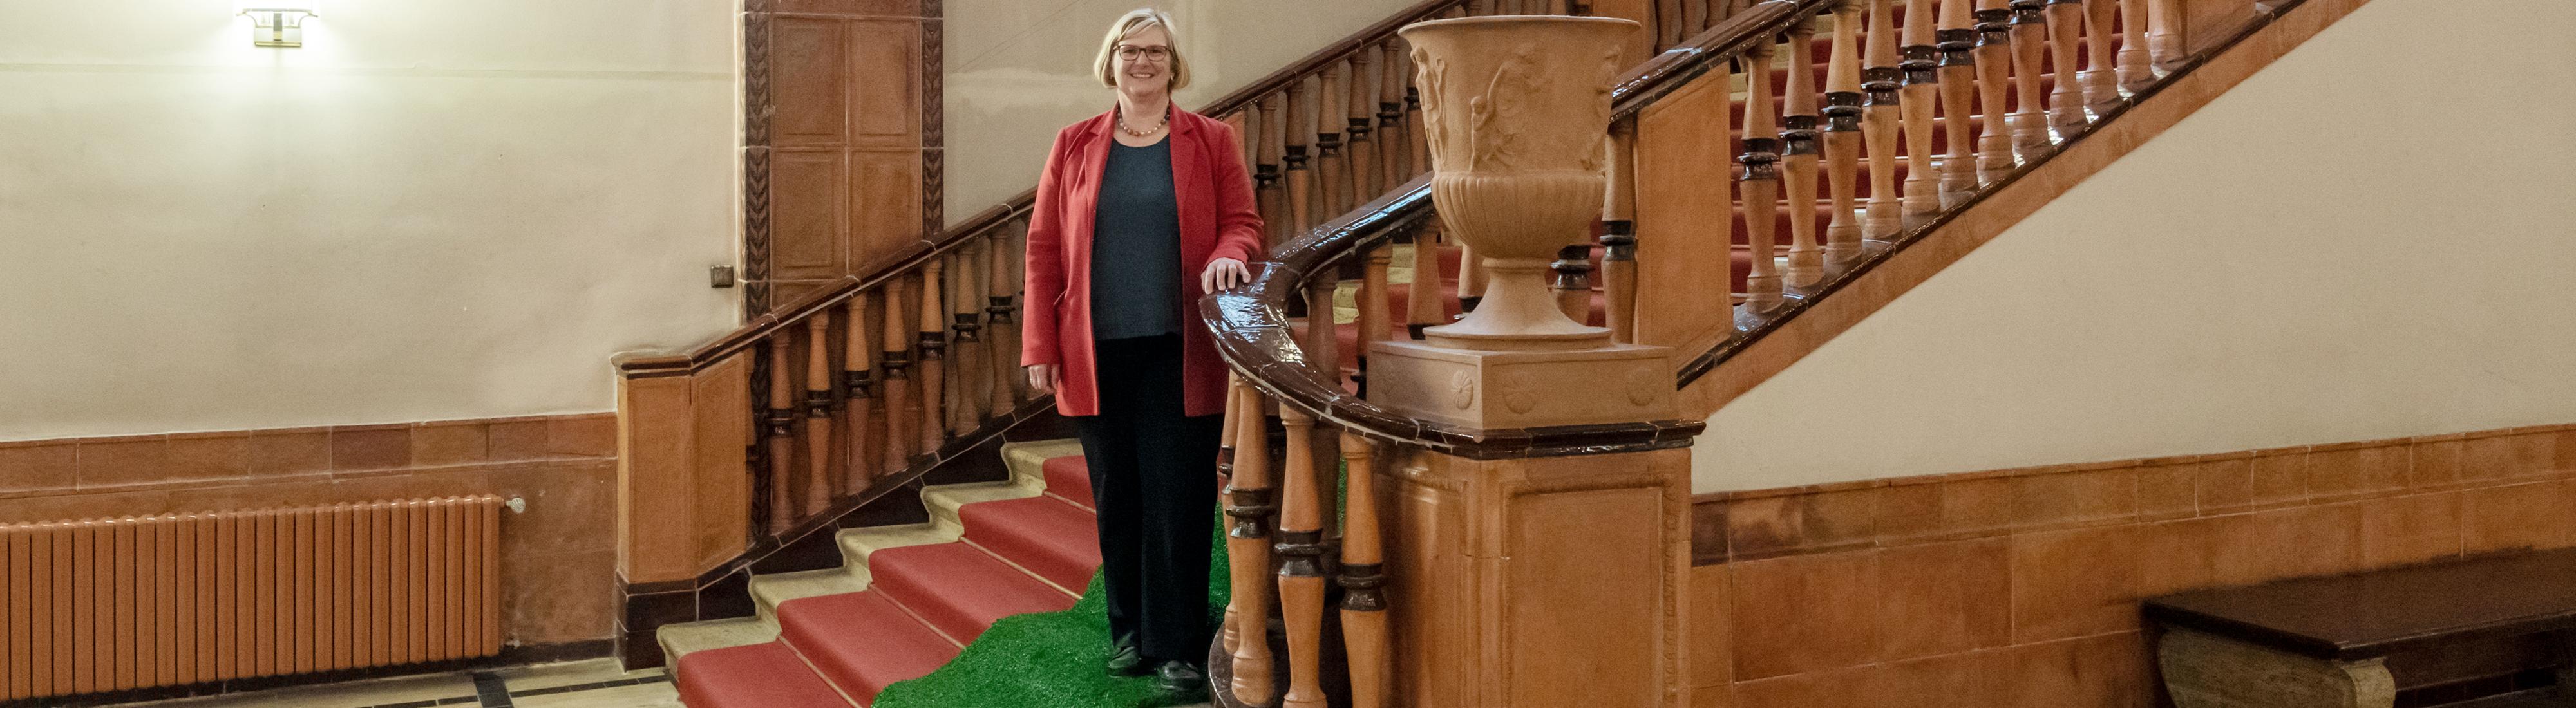 Portrait von Angelika Schöttler. Sie steht auf der marmornen Innentreppe des Schöneberger Rathauses, unter ihren Füßen ist ein grüner Teppich aus ökologischem Kunstrasen ausgerollt. Frau Schöttler trägt einen roten Blazer und eine Kette mit Kugeln in den Farben des Regenbogens.